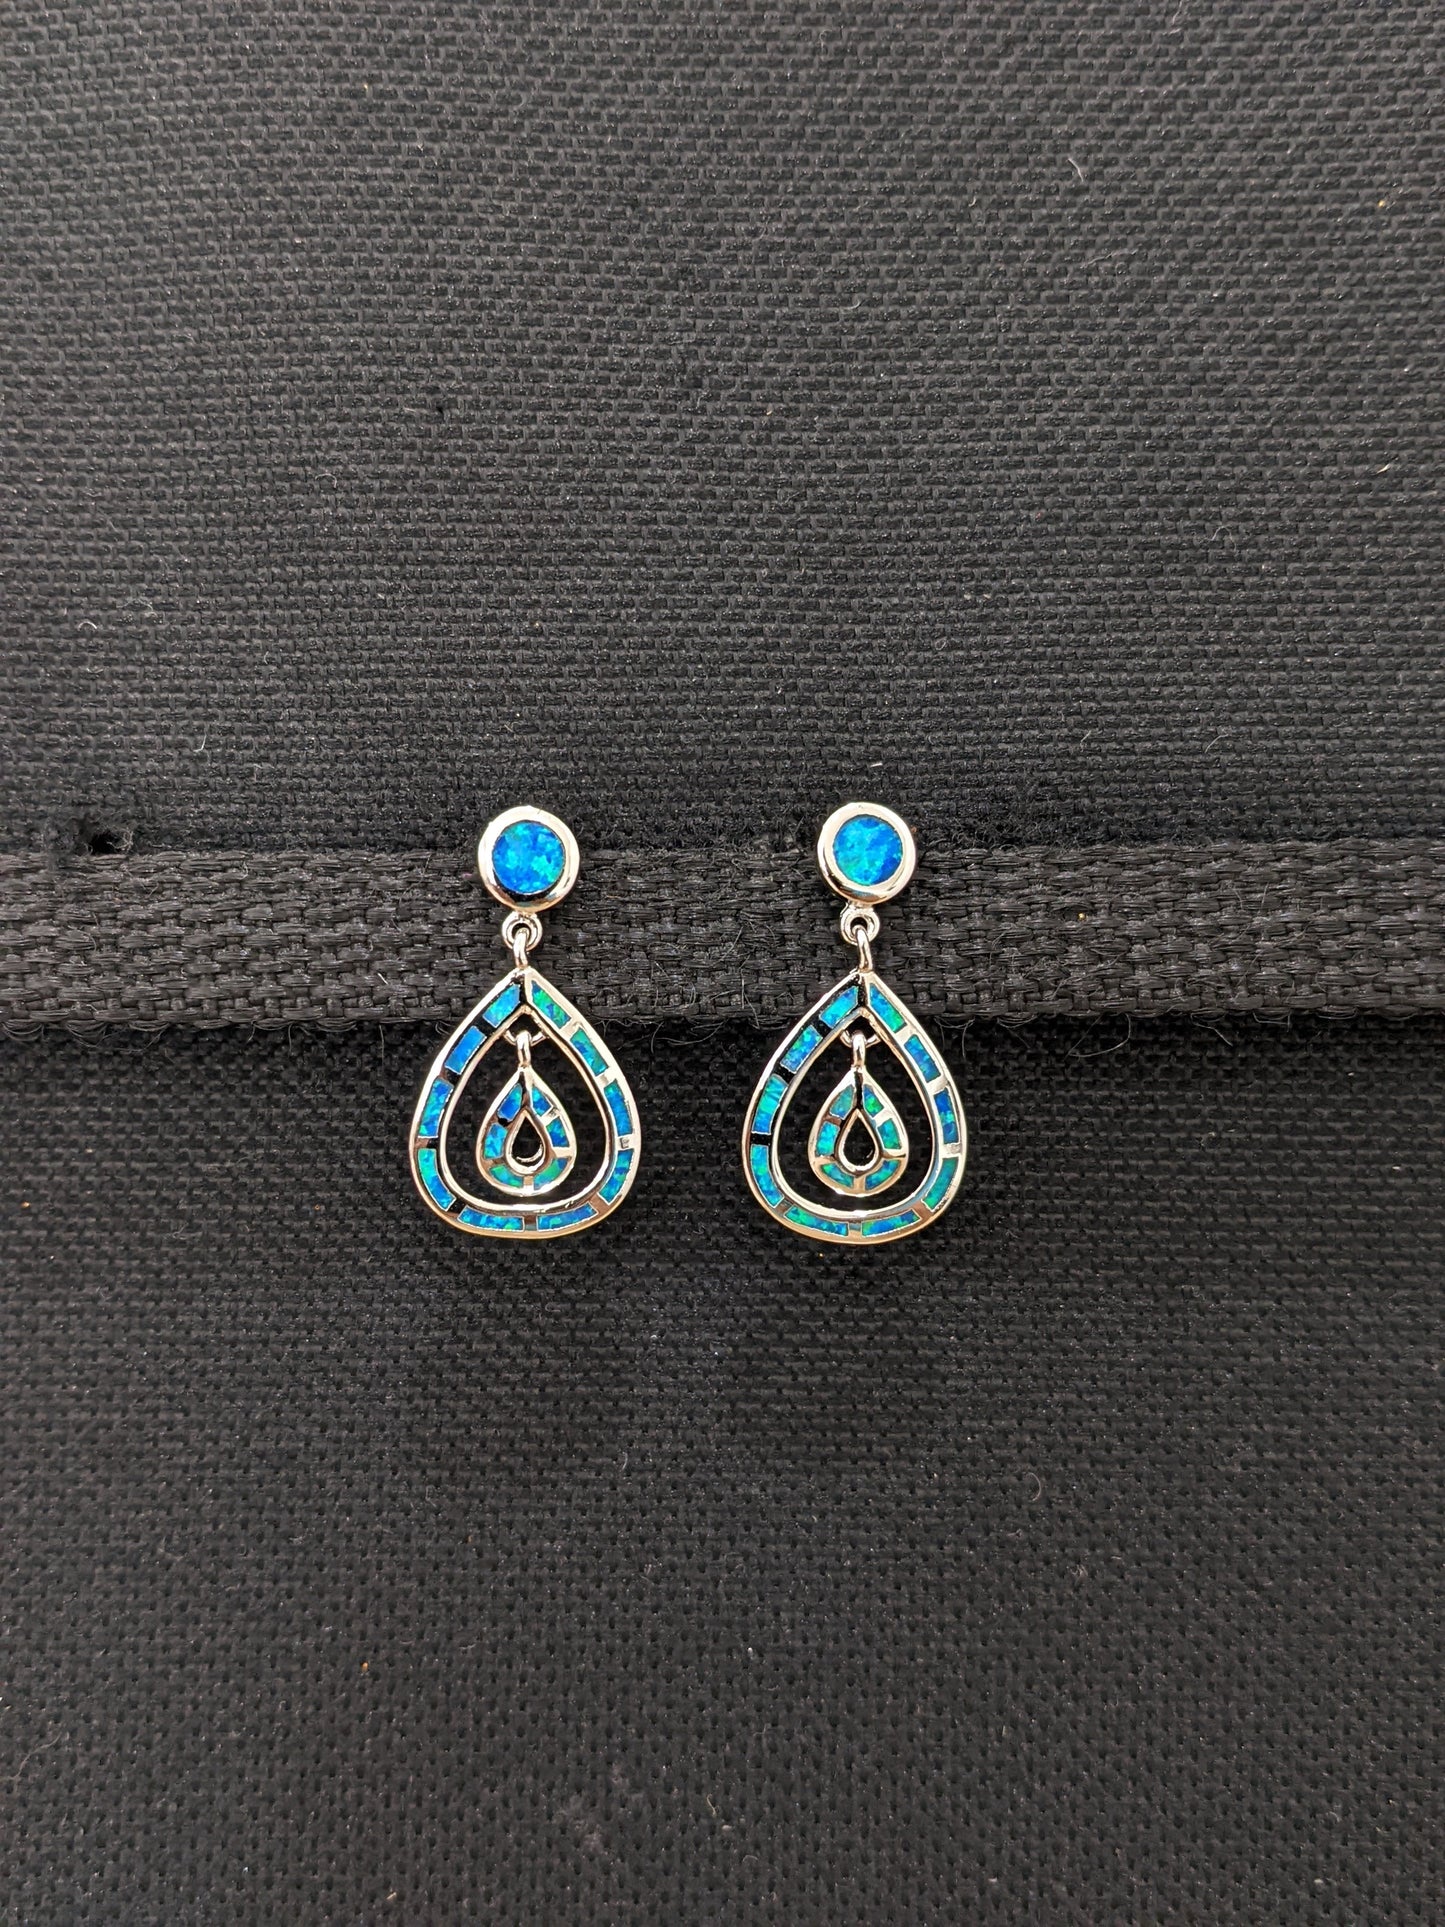 Blue opal double tear drop Earrings - Simpliful